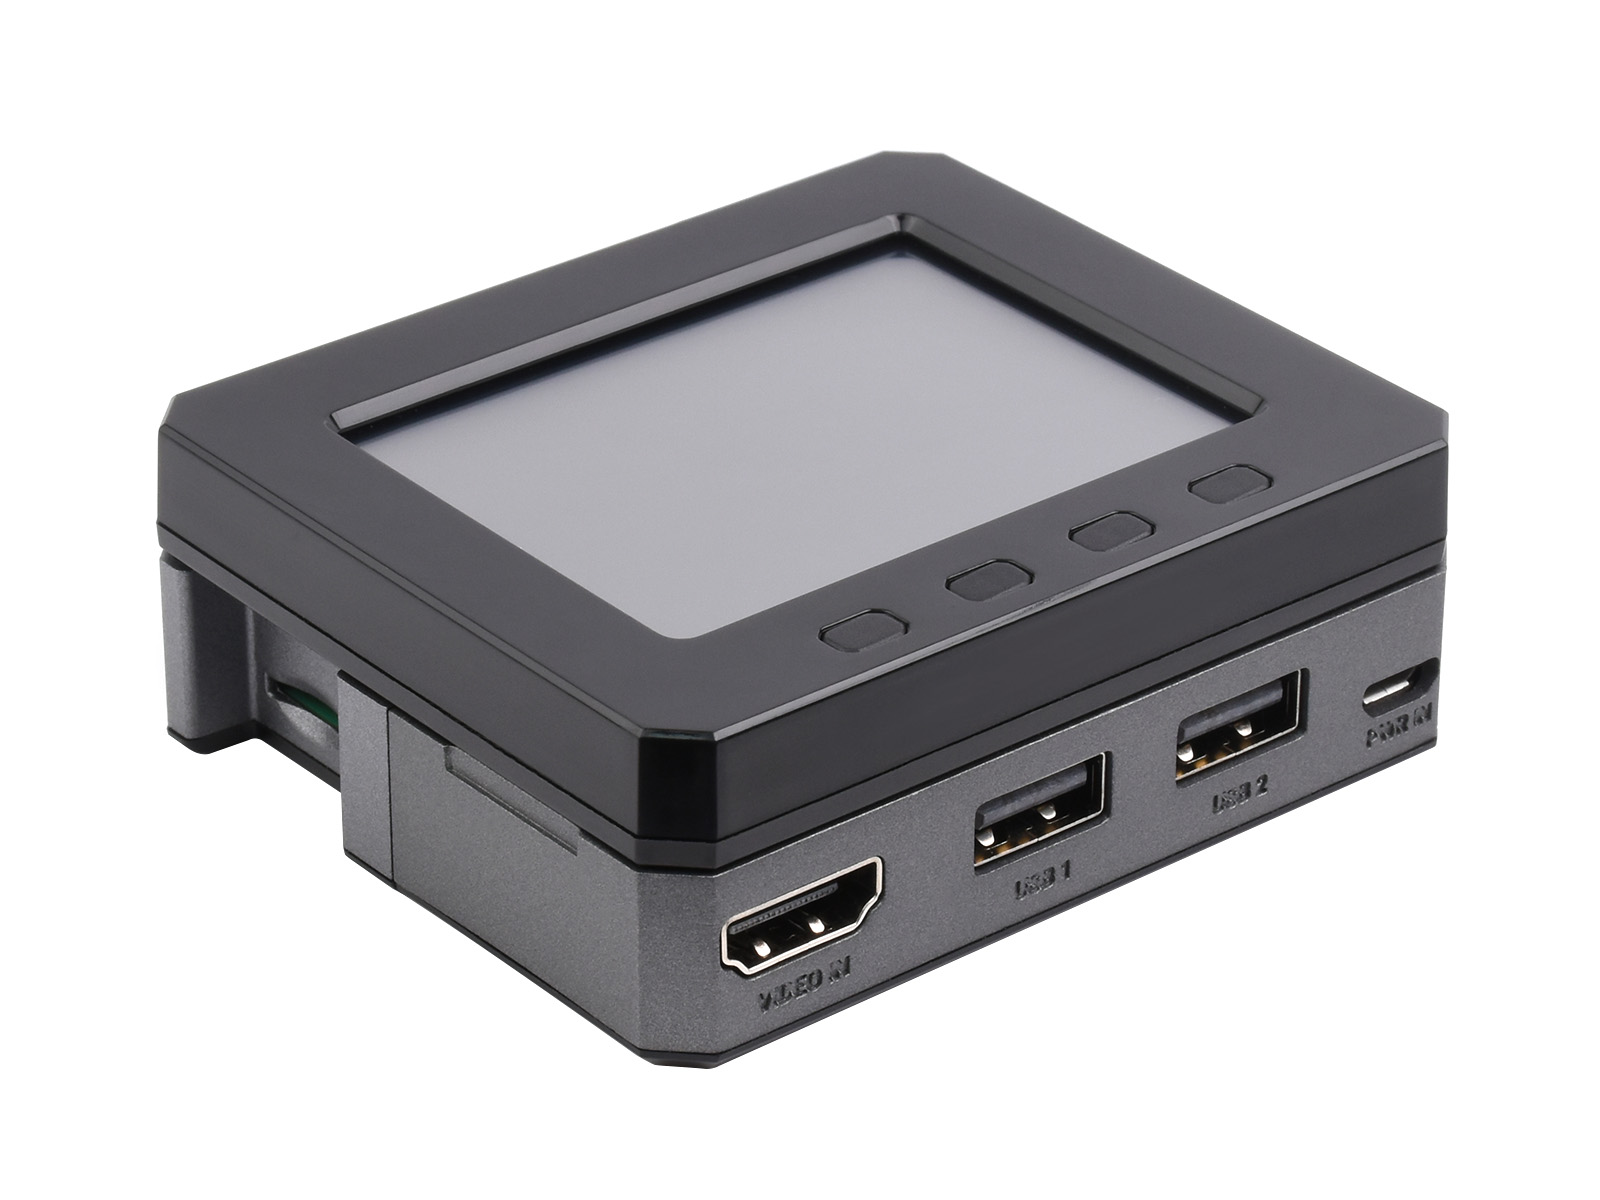 树莓派Zero POD套件B 含HDMI/USB扩展模块+Zero POD外壳+2.8寸LCD模块 适用于树莓派Zero/Zero 2 W系列主板